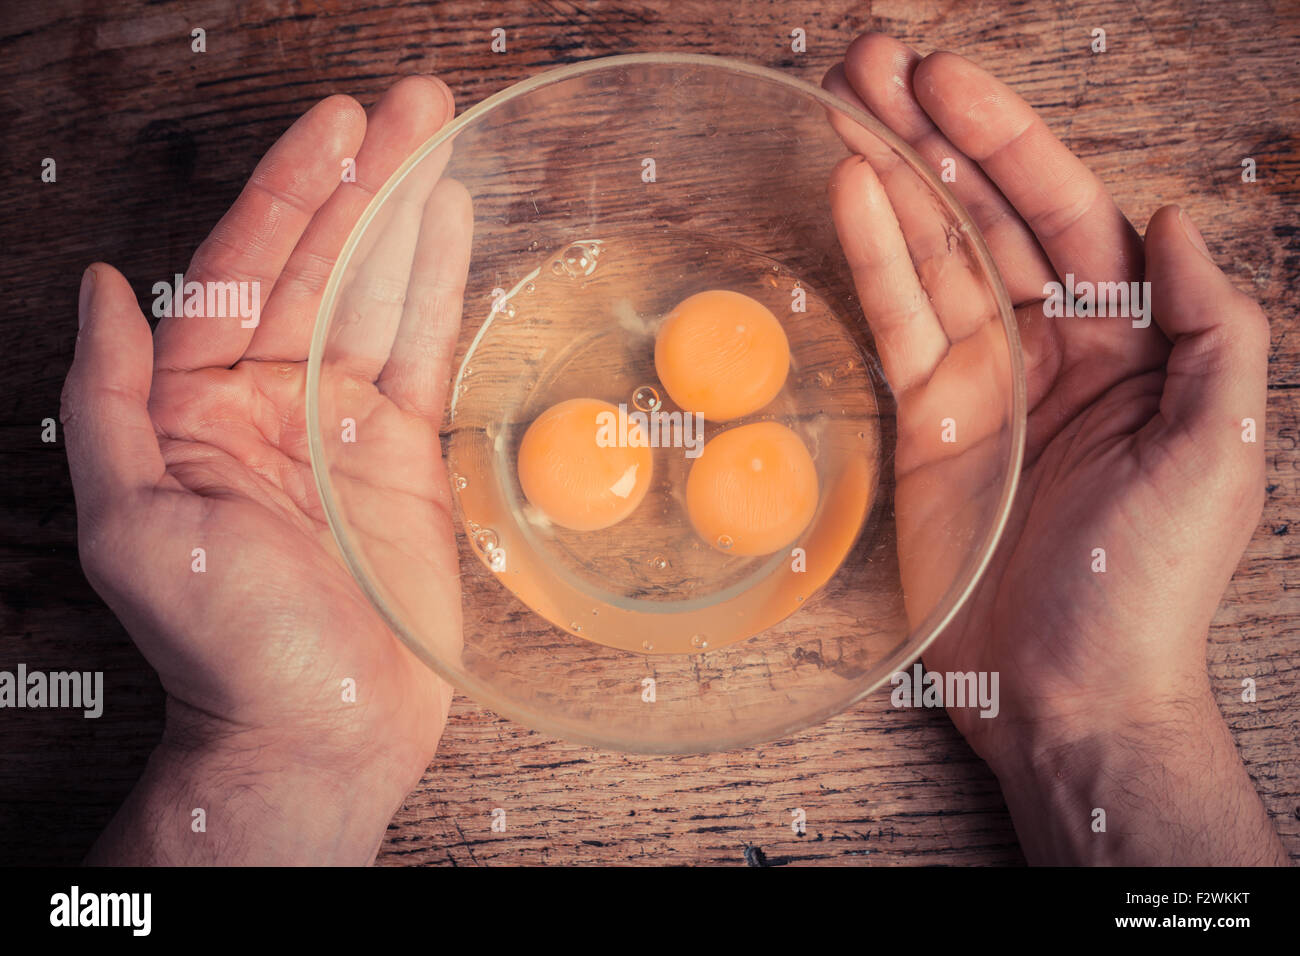 Mani tenendo una ciotola con tre uova crude in esso Foto Stock